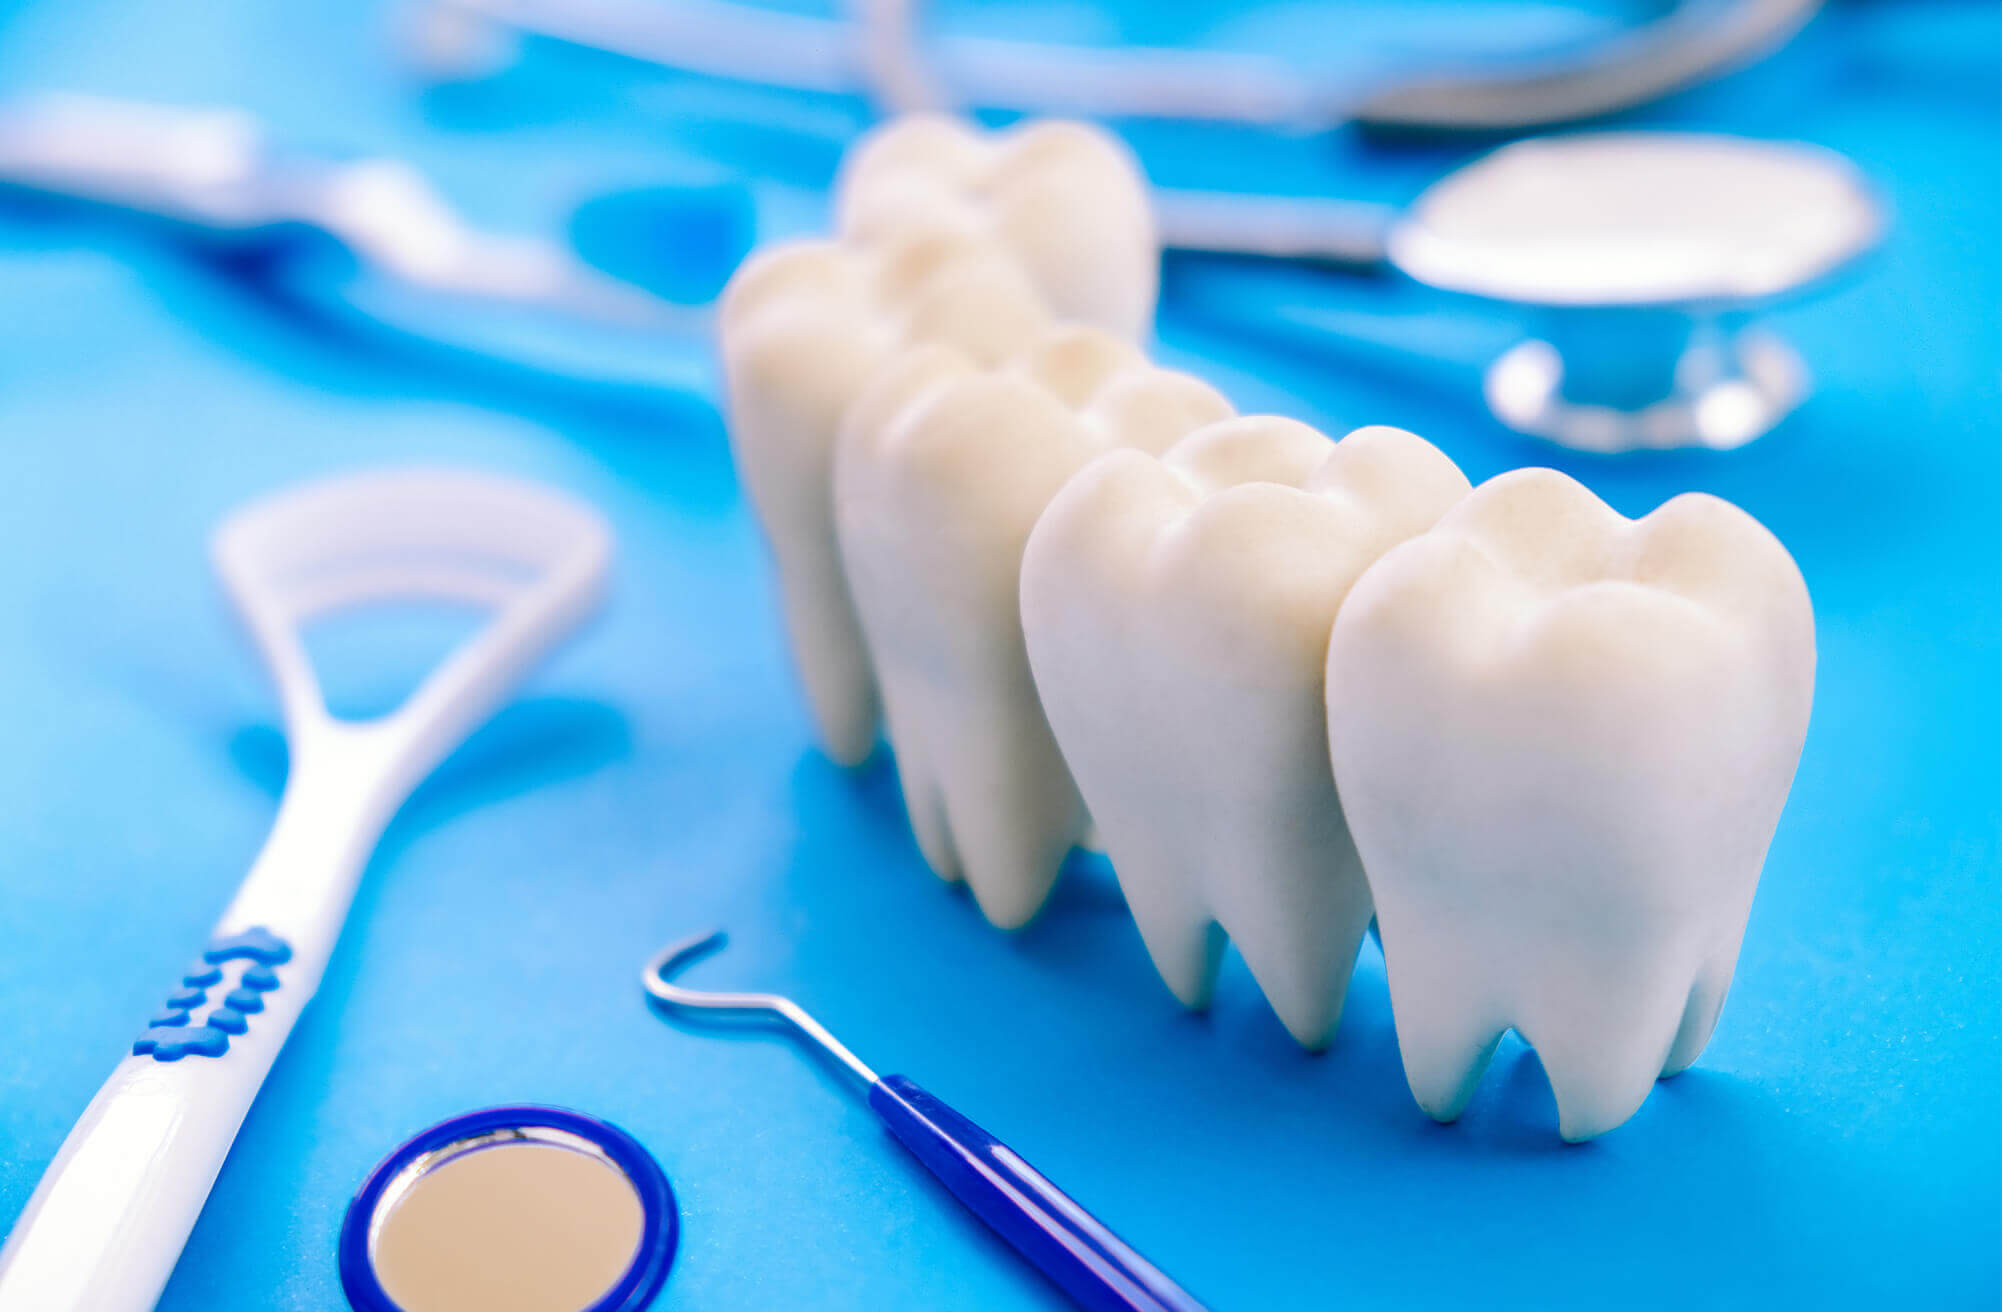 ما هي شروط زراعة الأسنان؟